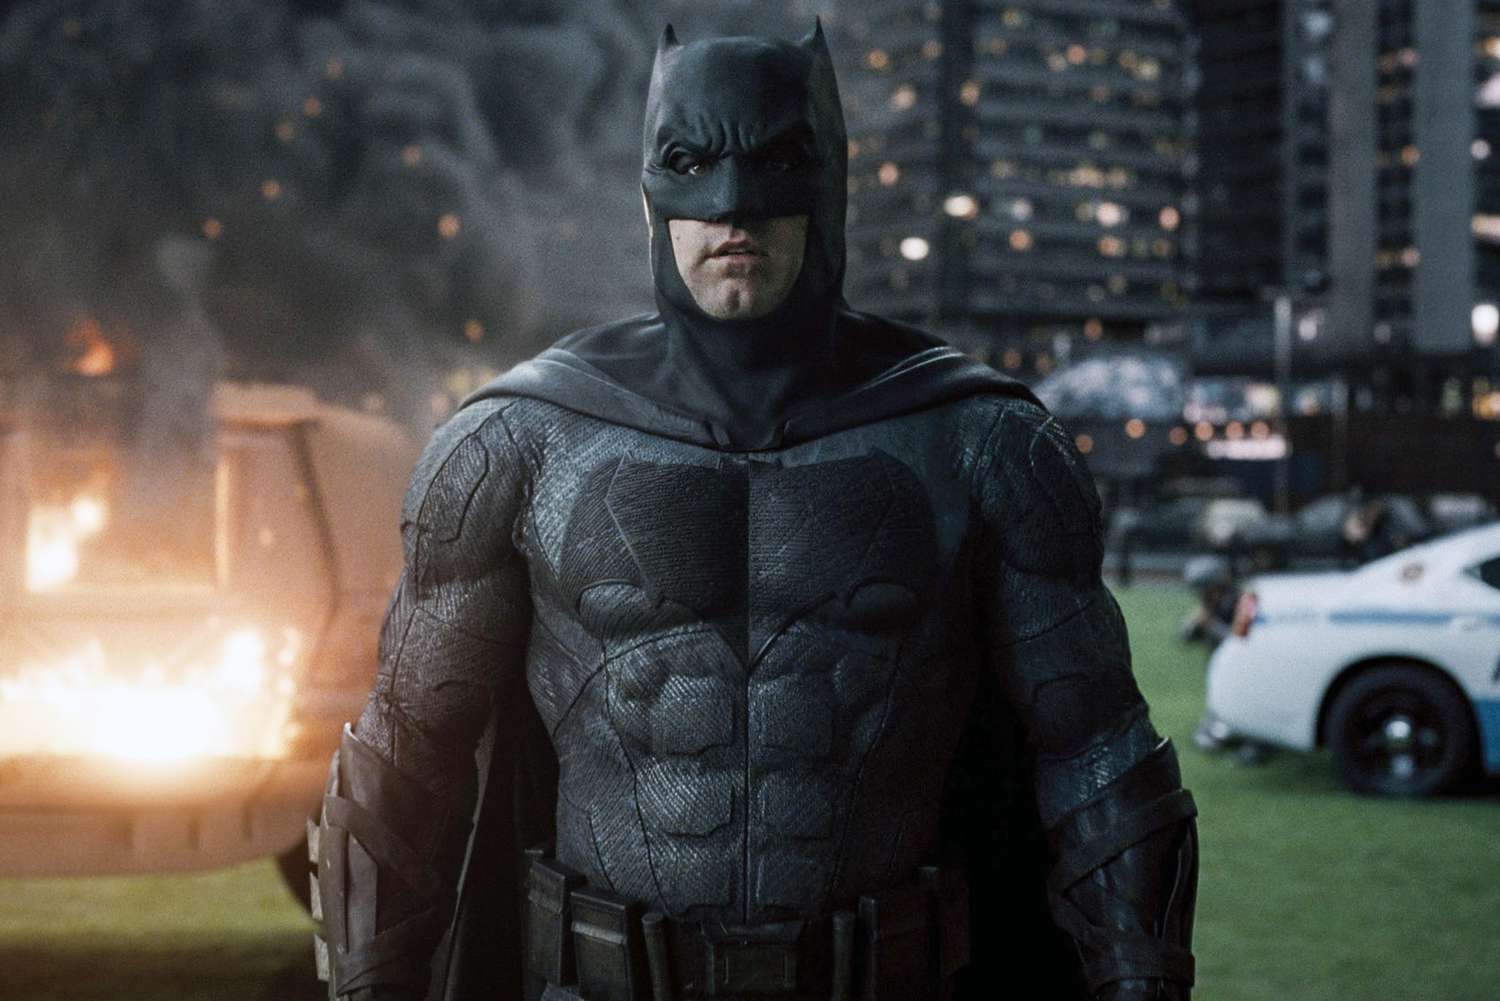 Ben Affleck had a great script for his solo Batman film